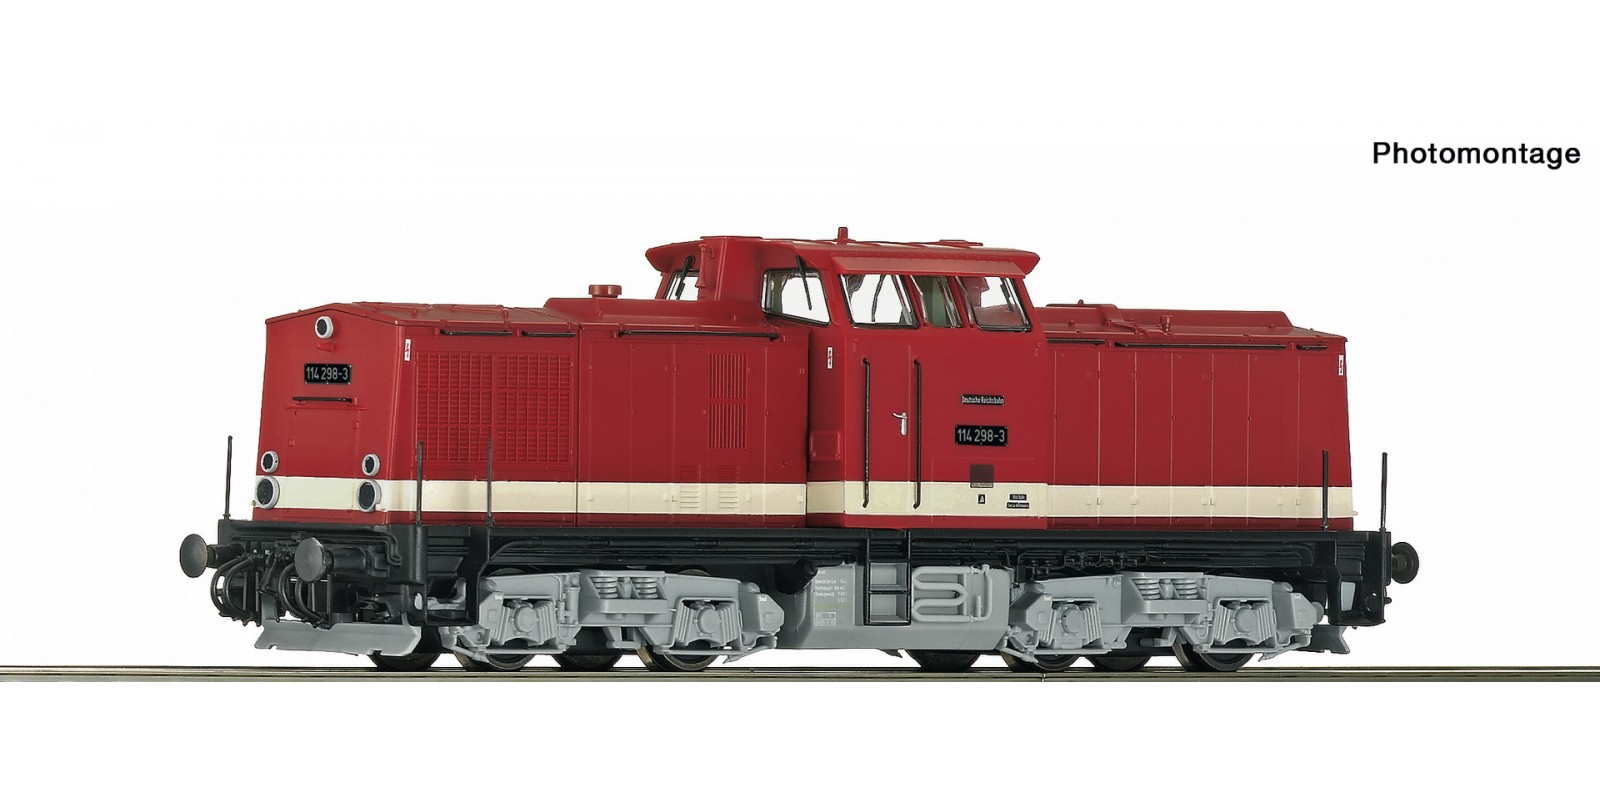 RO70812 Diesel locomotive 114 298-3, DR